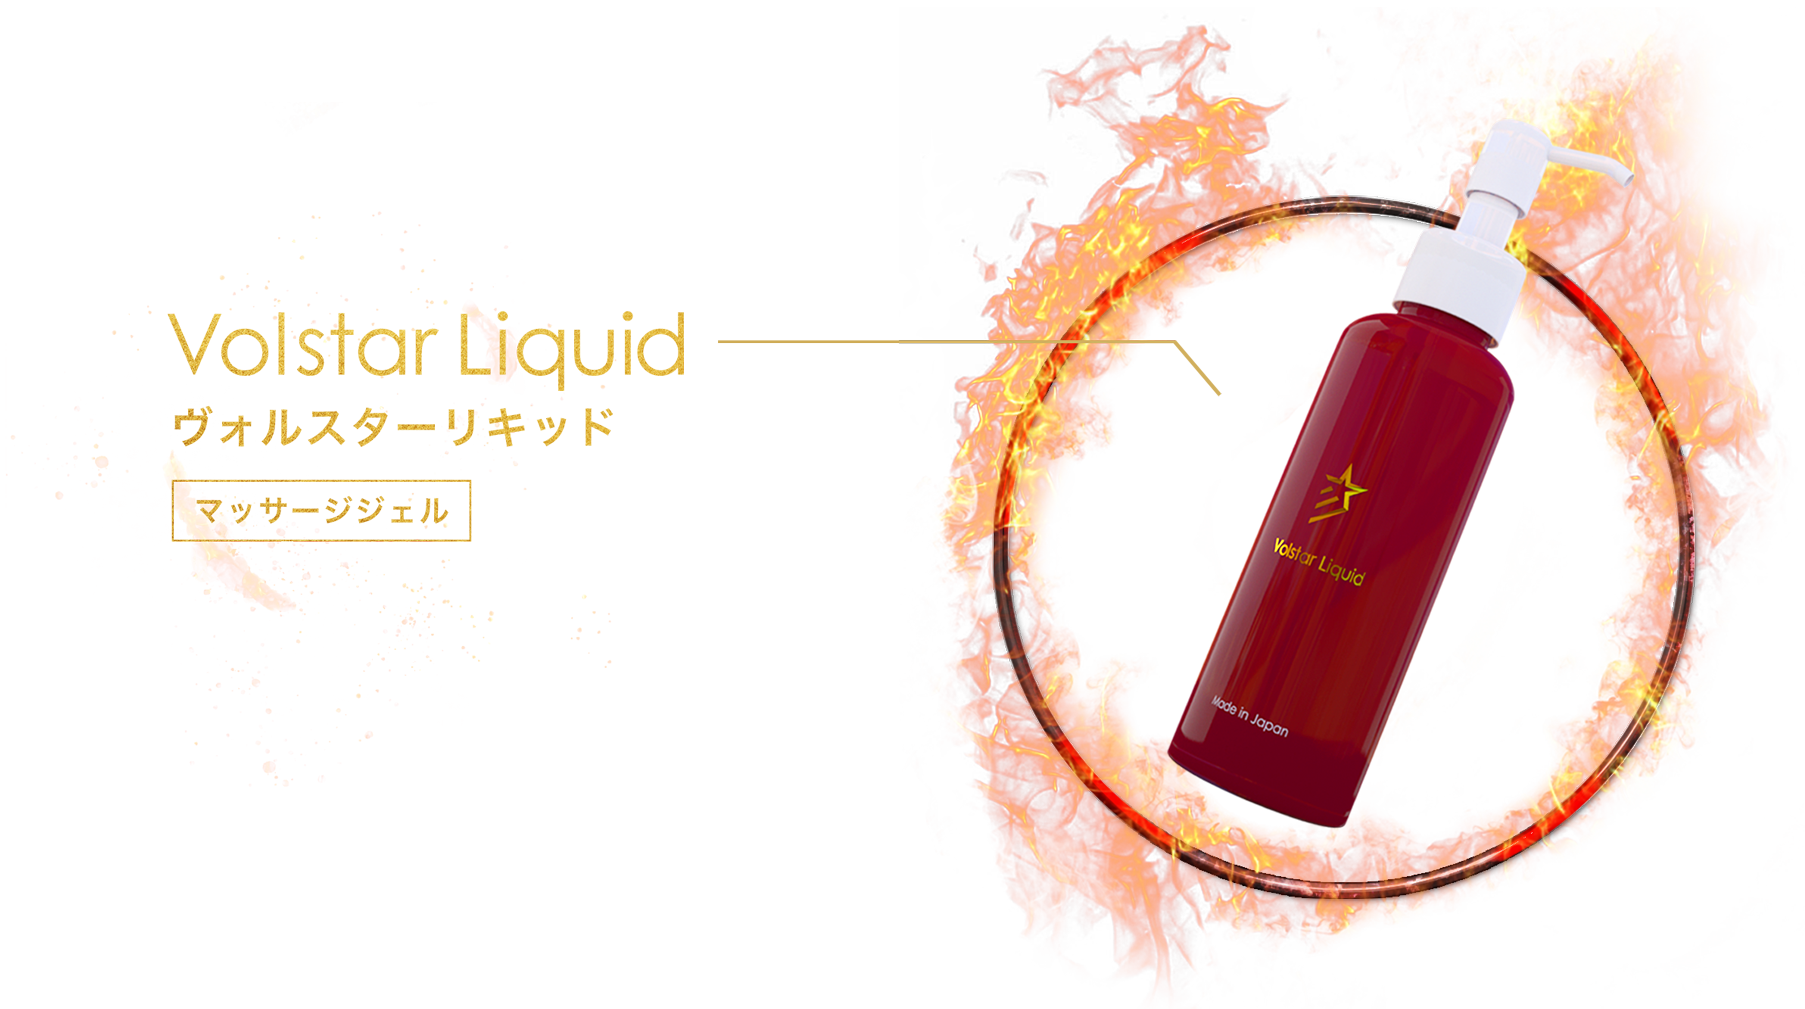 Volstar Liquid(ヴォルスターリキッド)の商品詳細ページ